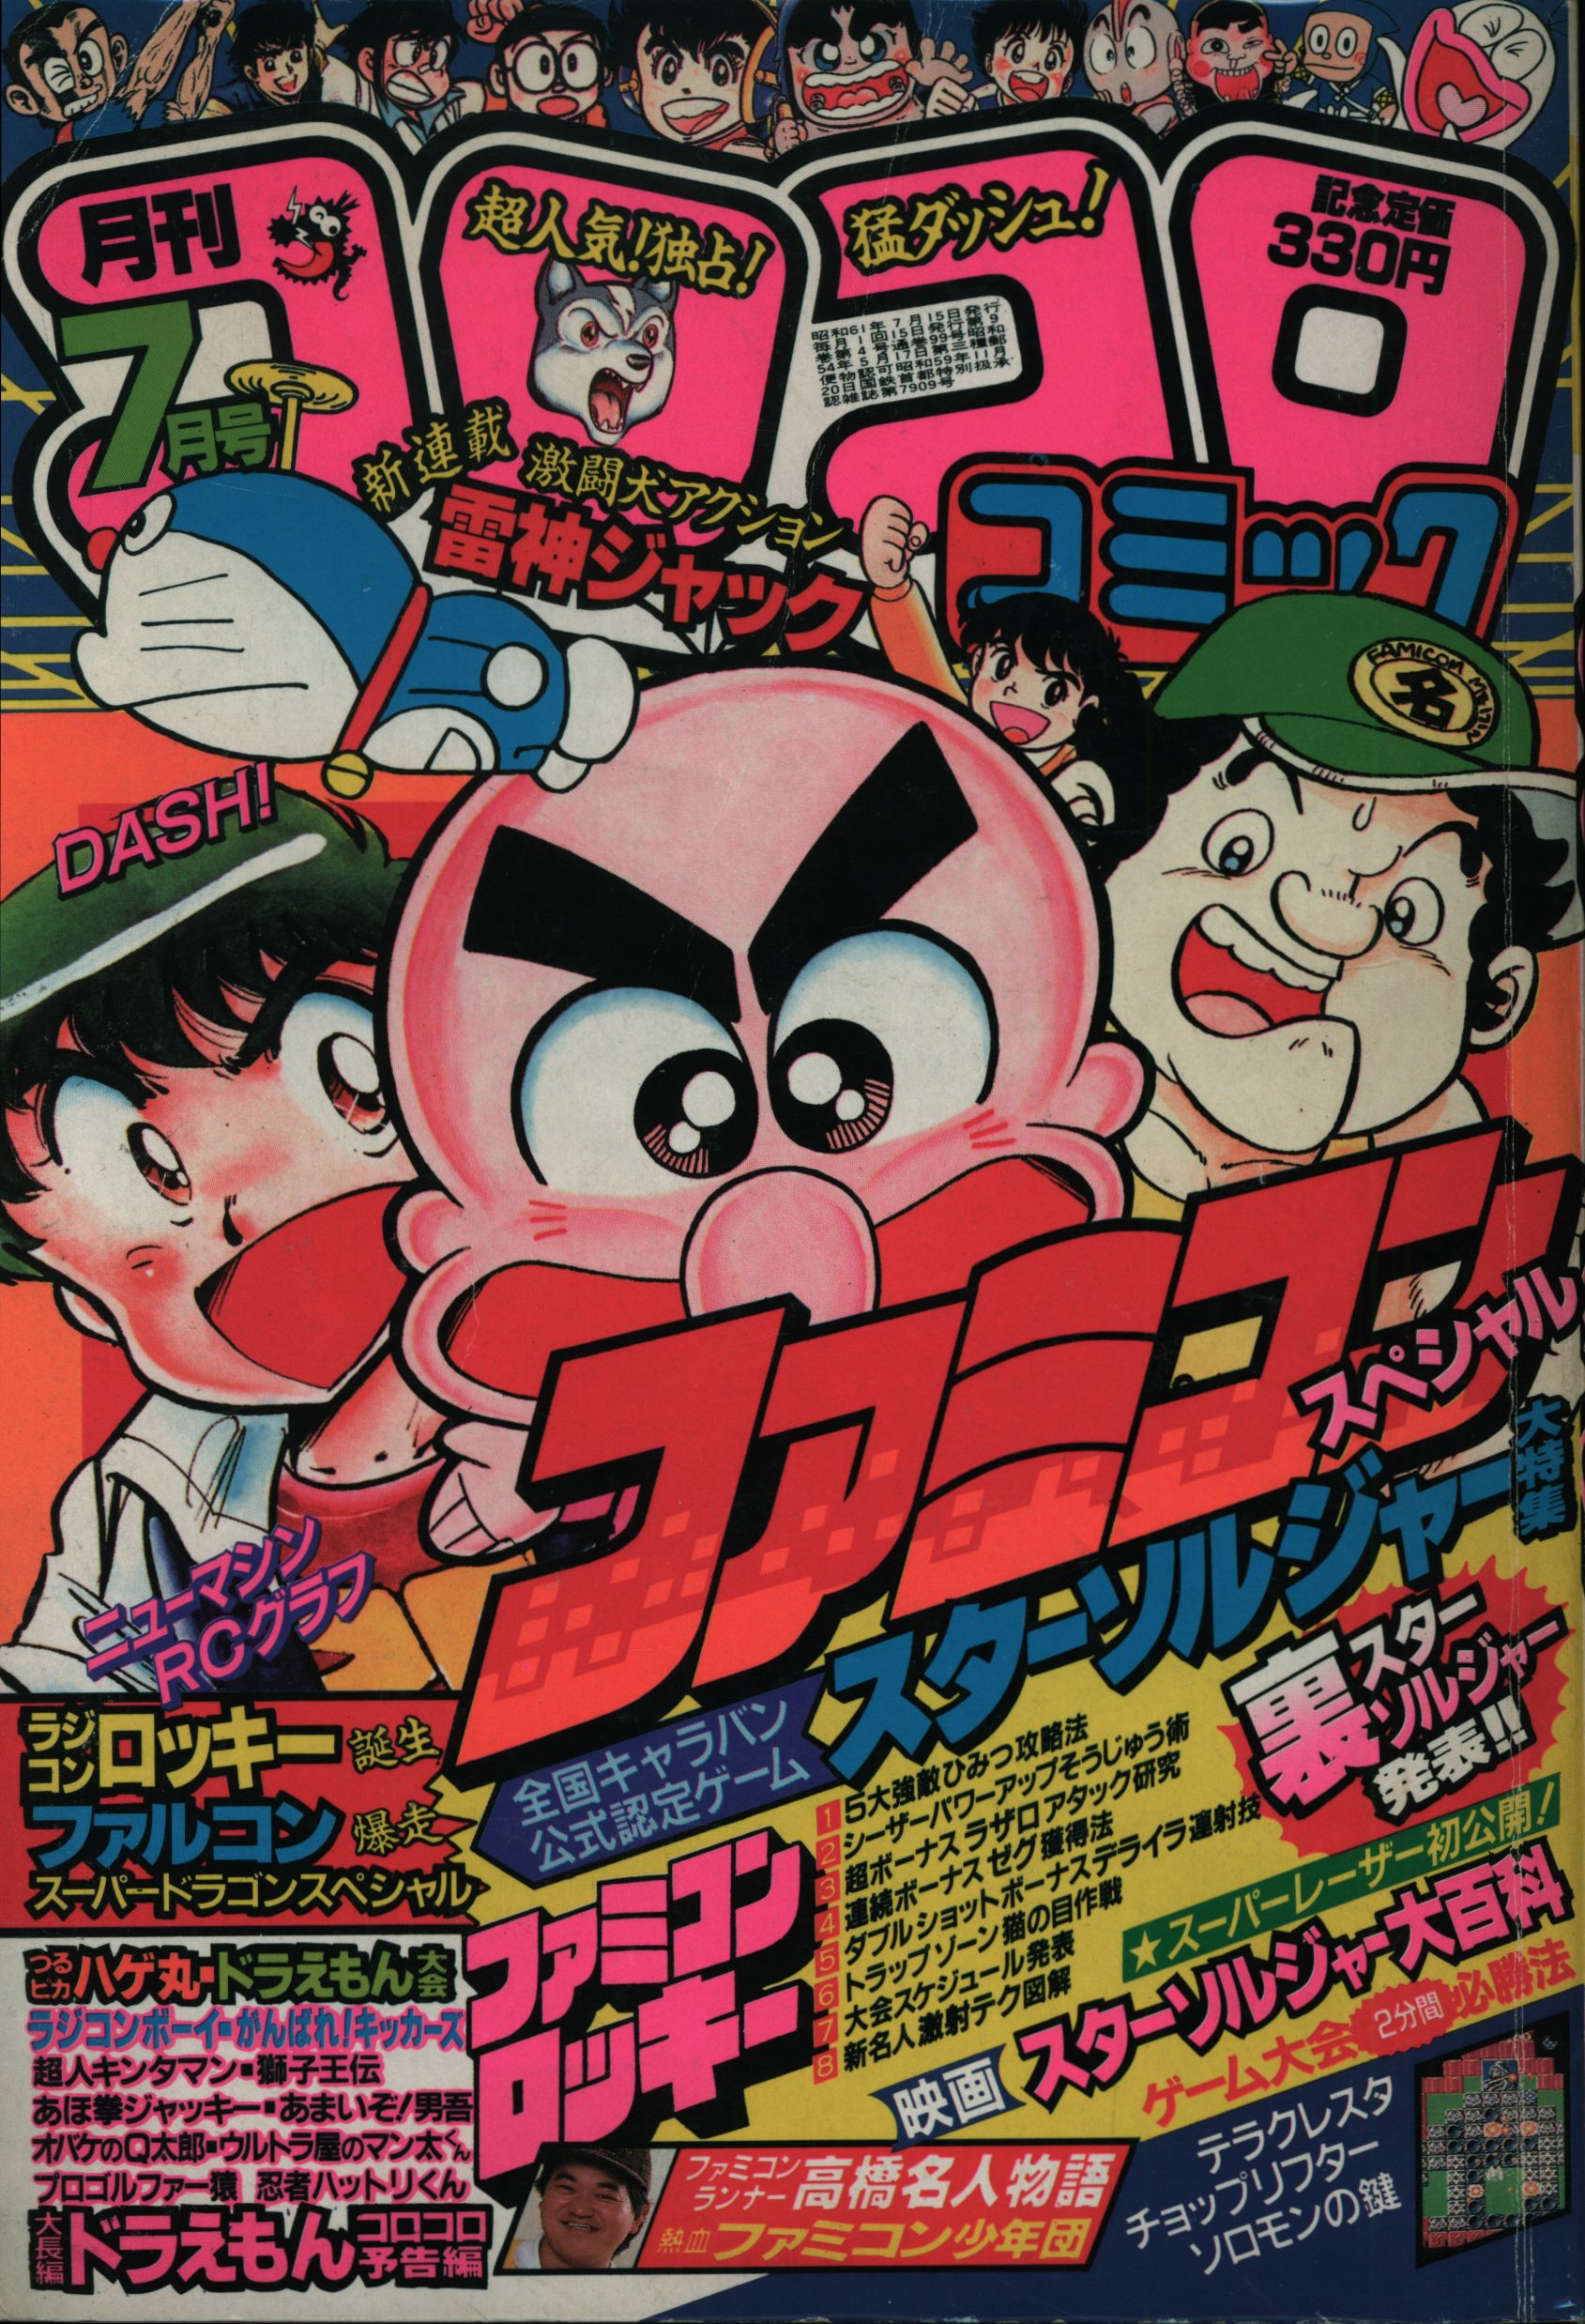 小学館 1986年(昭和61年)の漫画雑誌 コロコロコミック 1986年(昭和61年 